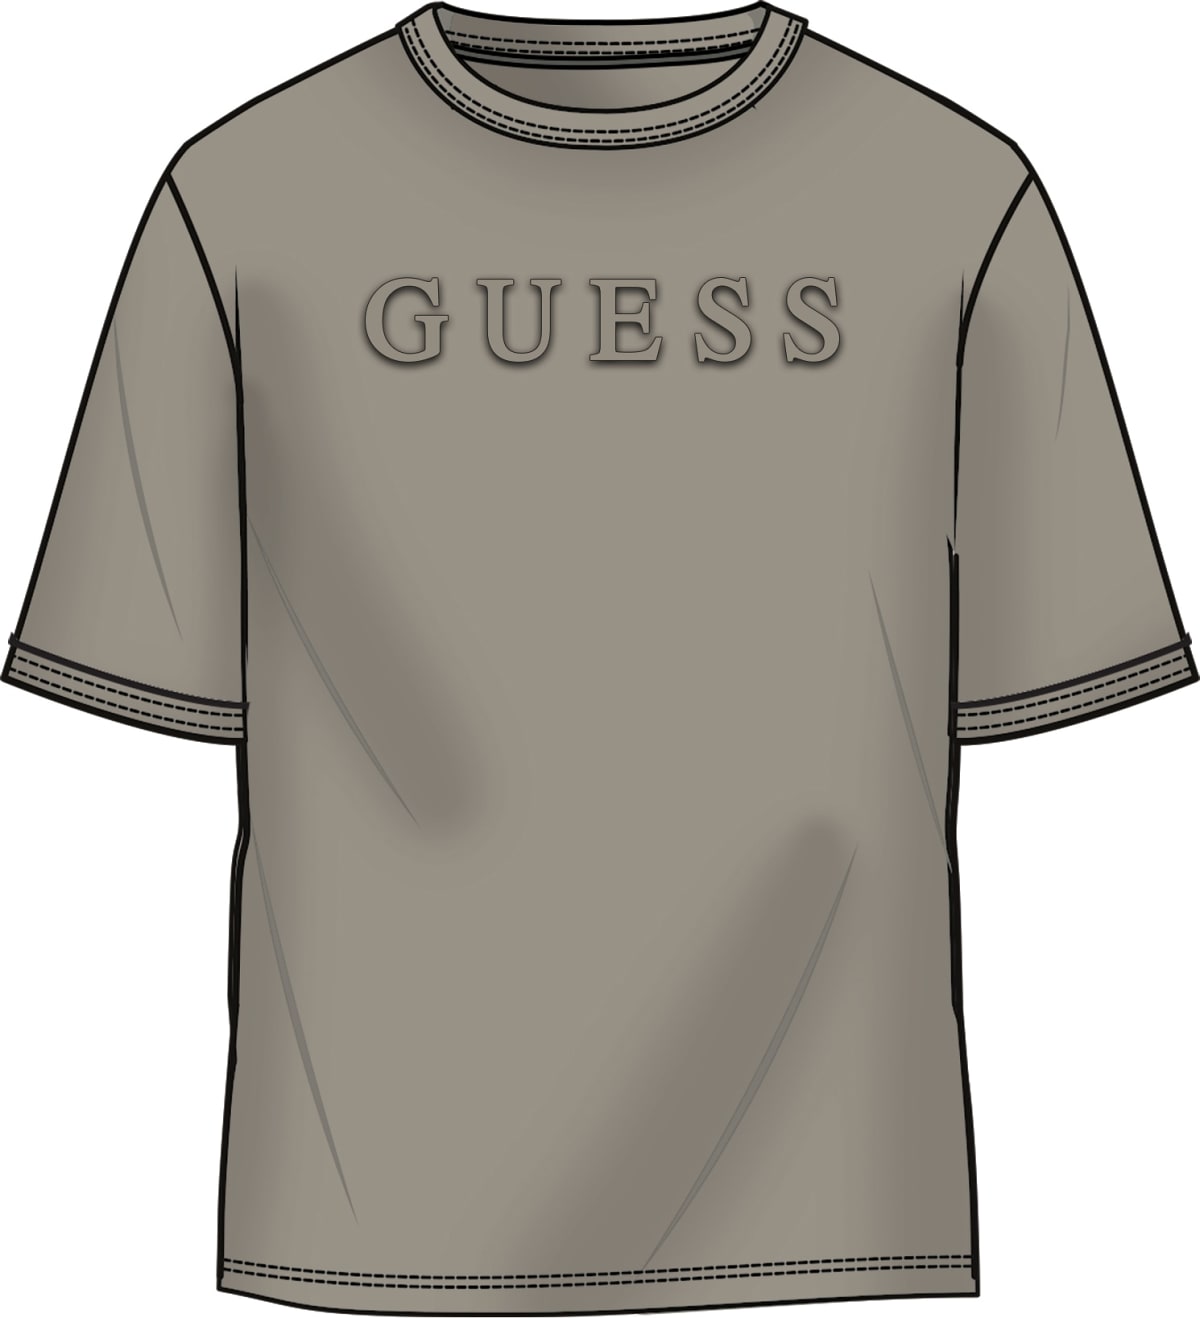 GUESS T-shirt Uomo - Grigio